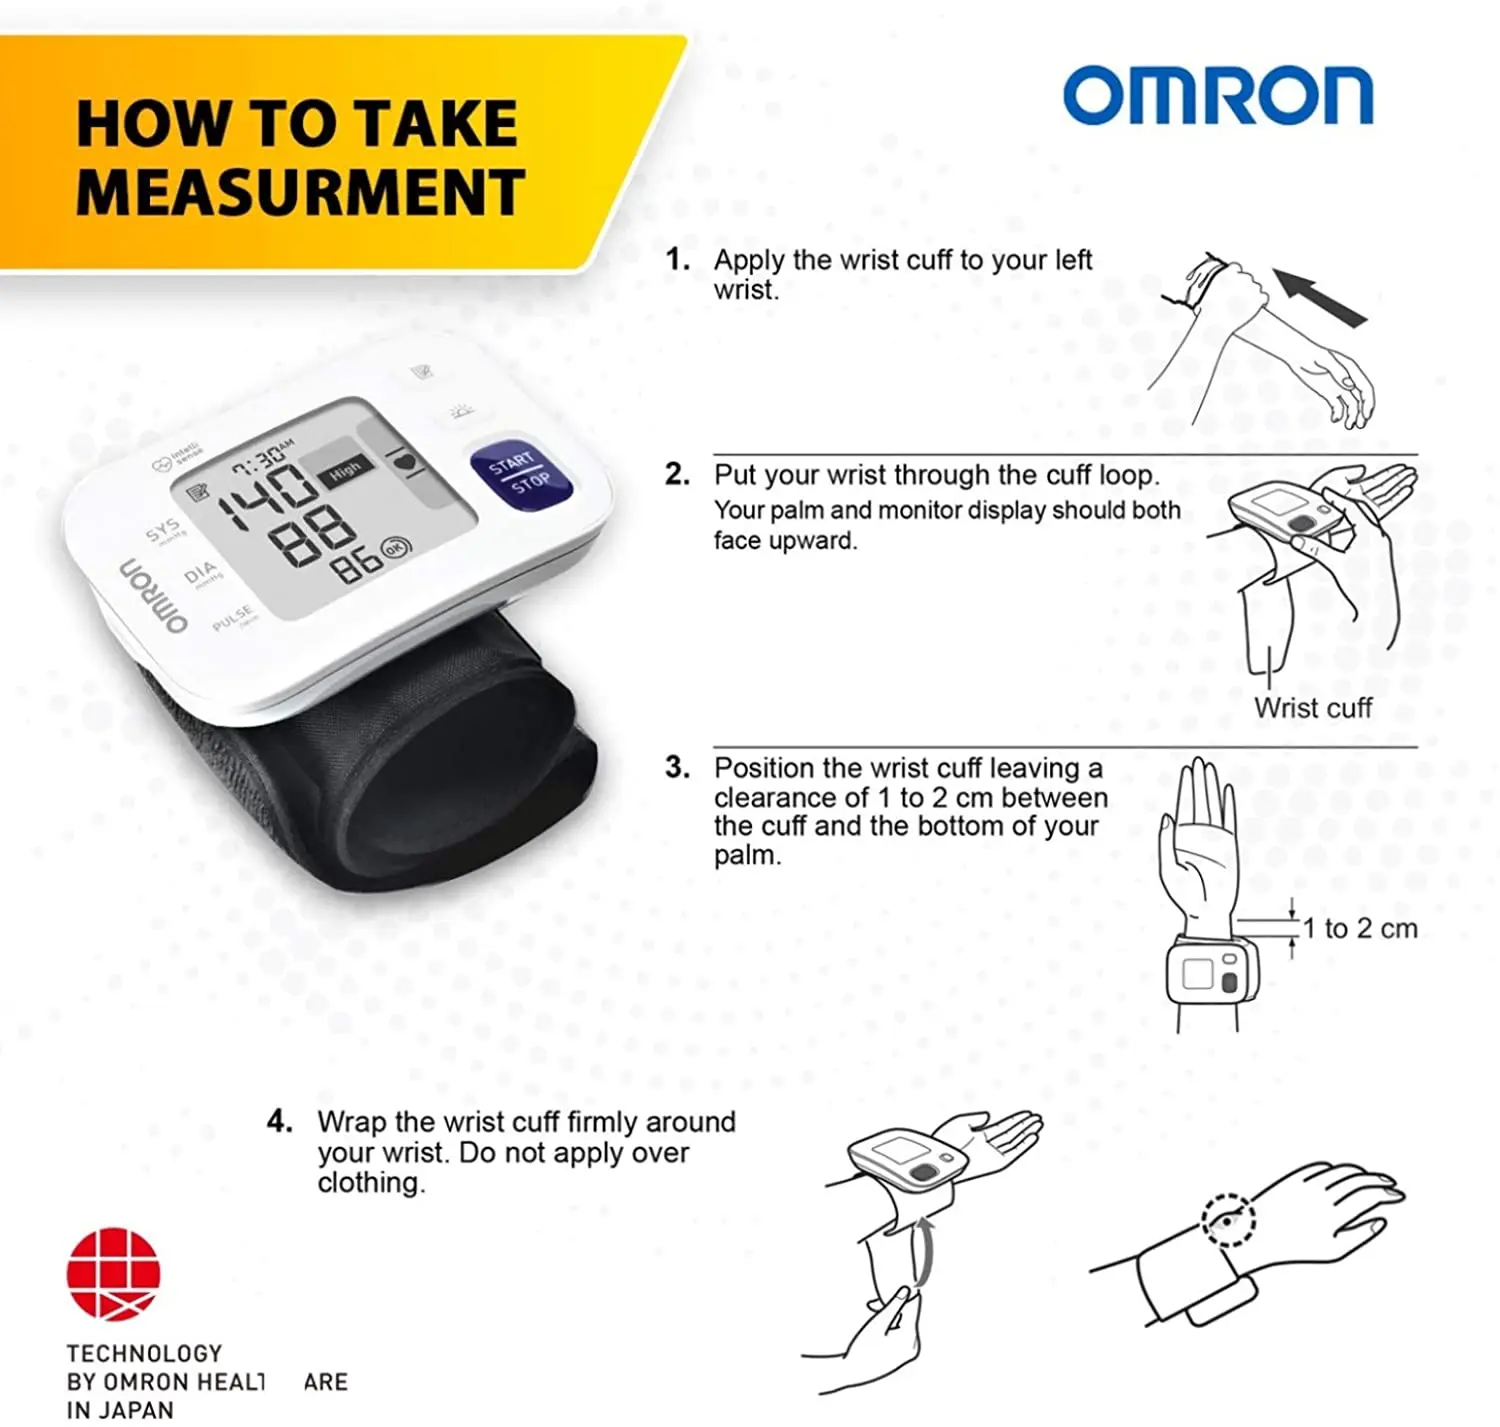 Автоматический наручный Монитор артериального давления Omron Hem с Умной технологией, руководство по упаковке манжеты и обнаружение неправильной сердцебиения